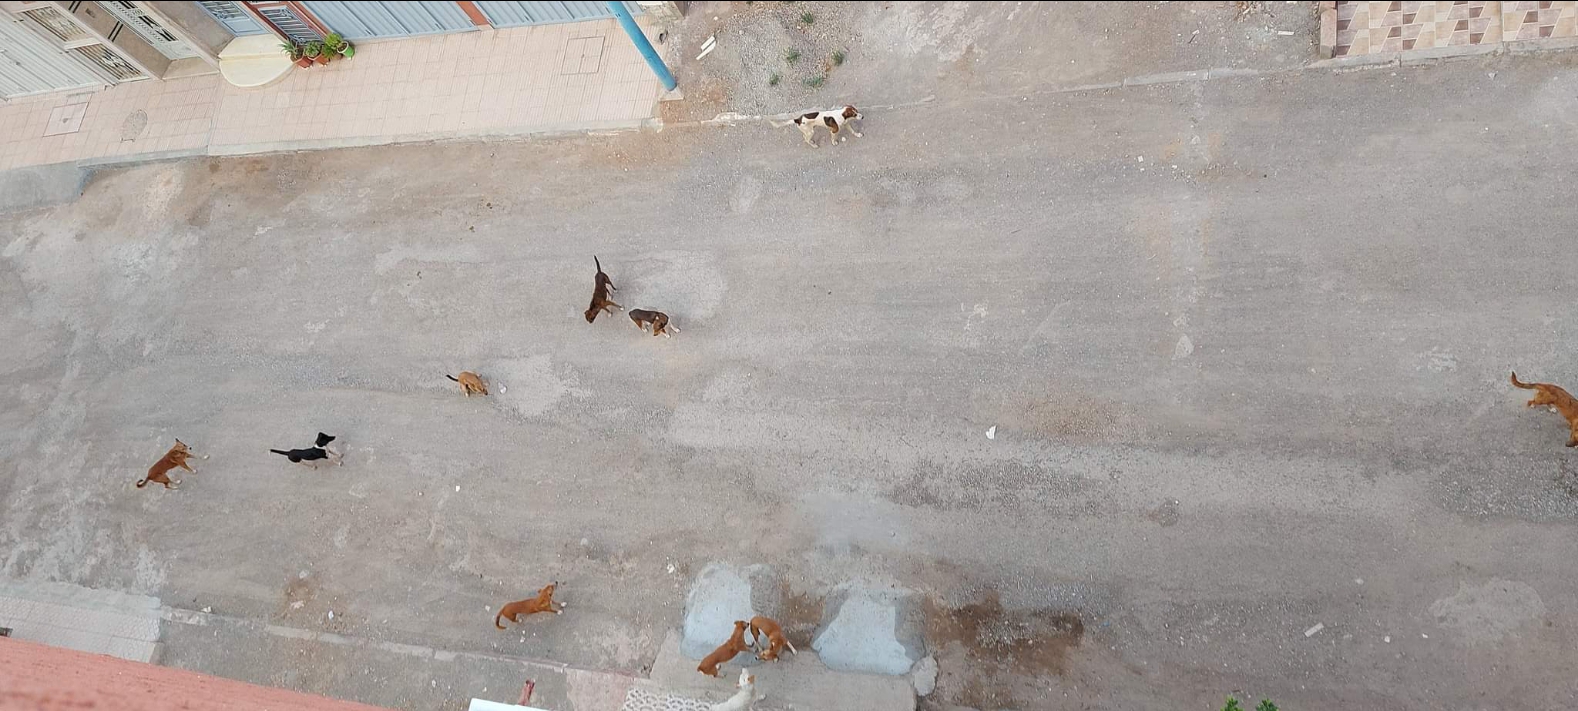 بالفيديو… مواطنون يشتكون من انتشار الكلاب الضالة وهجماتها على اطفالهم ويطالبون جماعة بني ملال بالتدخل